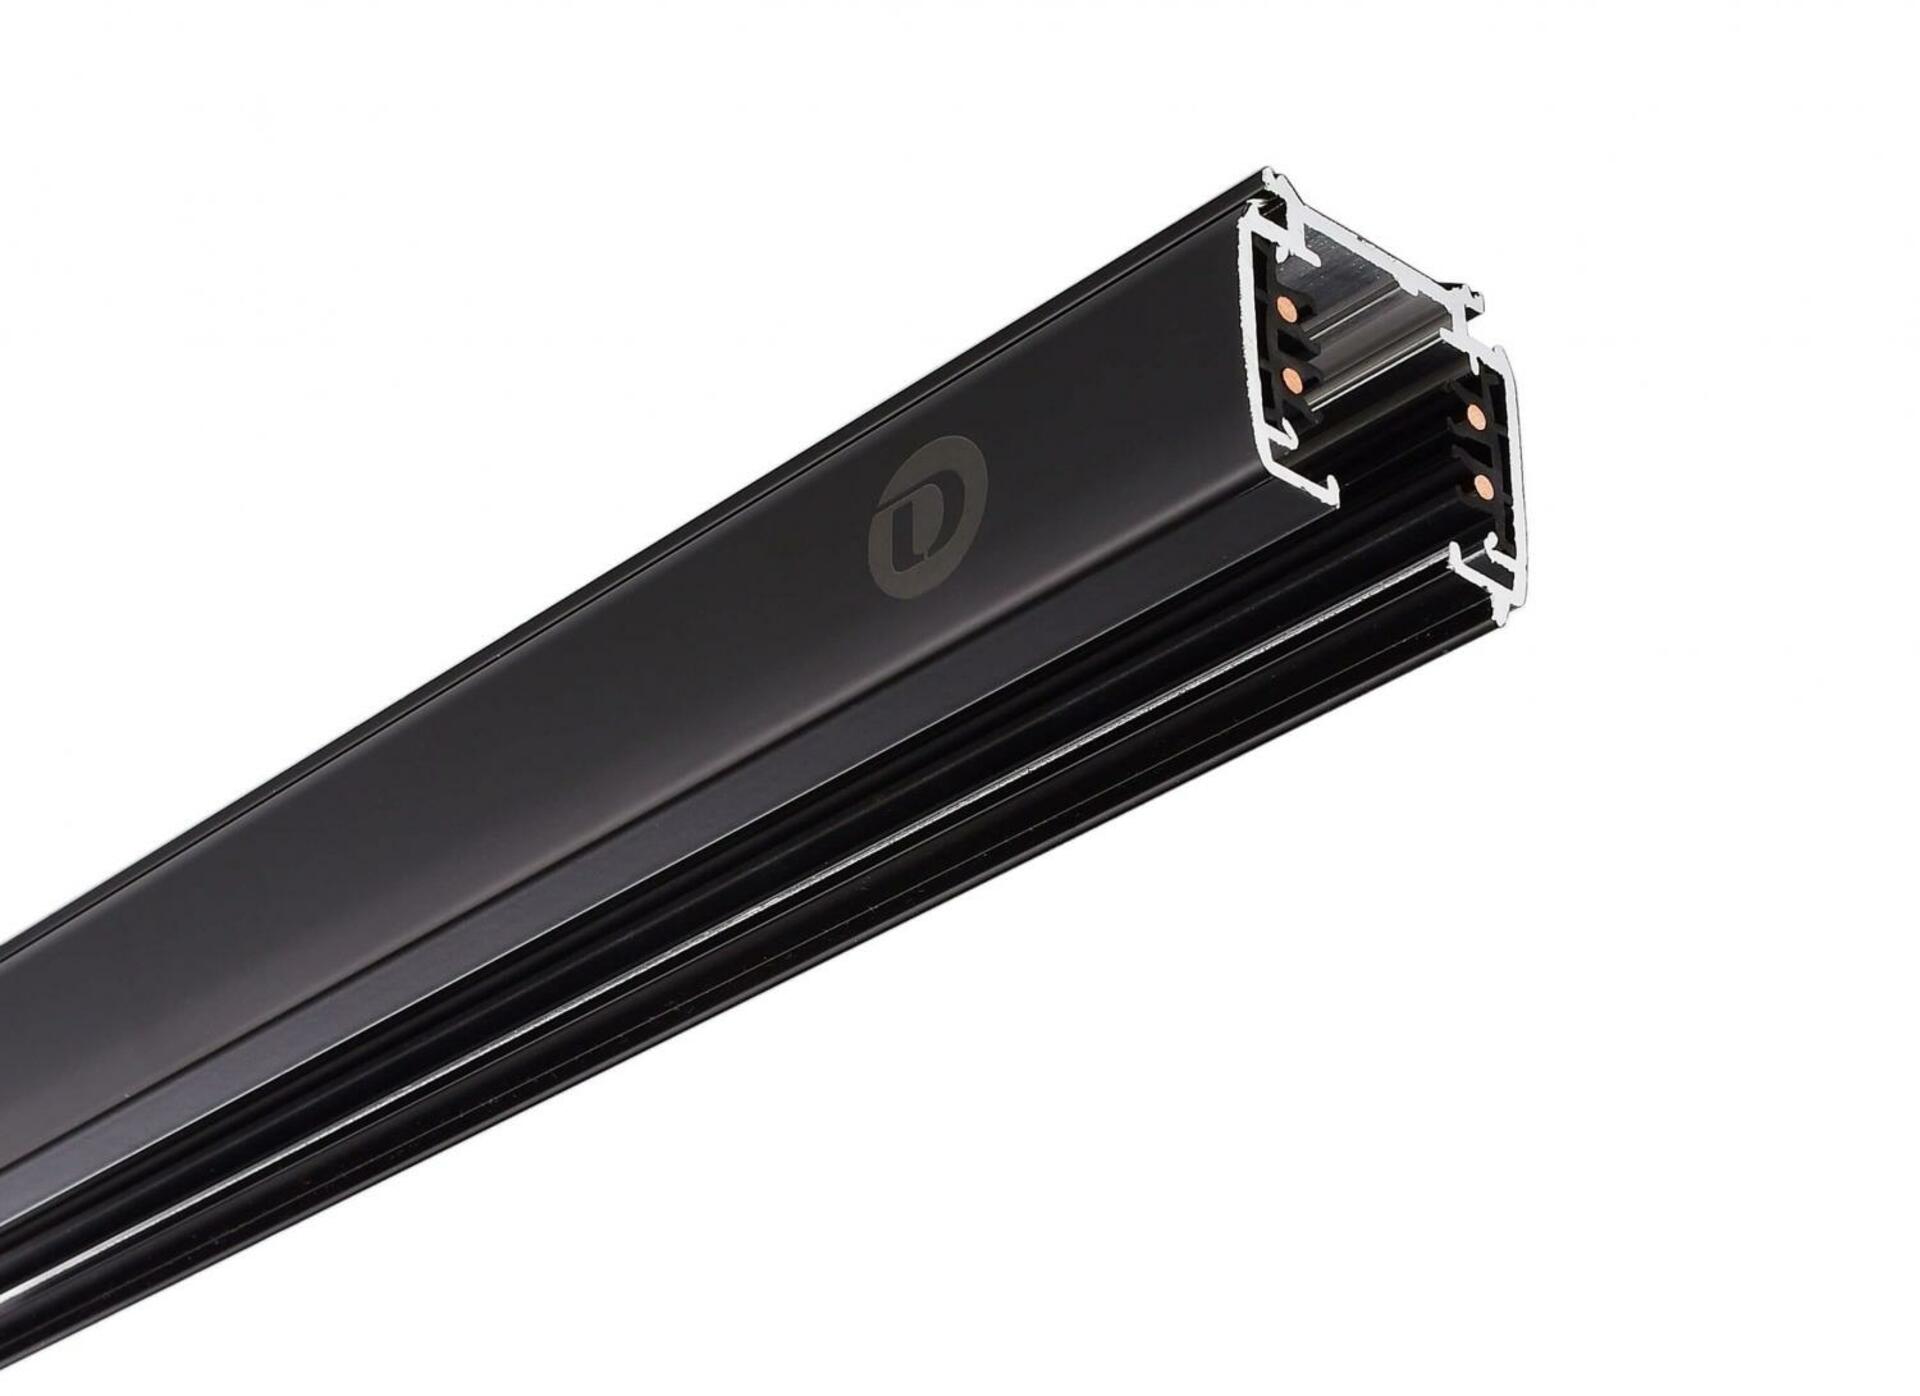 Light Impressions Deko-Light kolejnicový systém 3-fázový 230V D Line vestavná lišta 1m 220-240V AC/50-60Hz černá RAL 9011 1000  710002